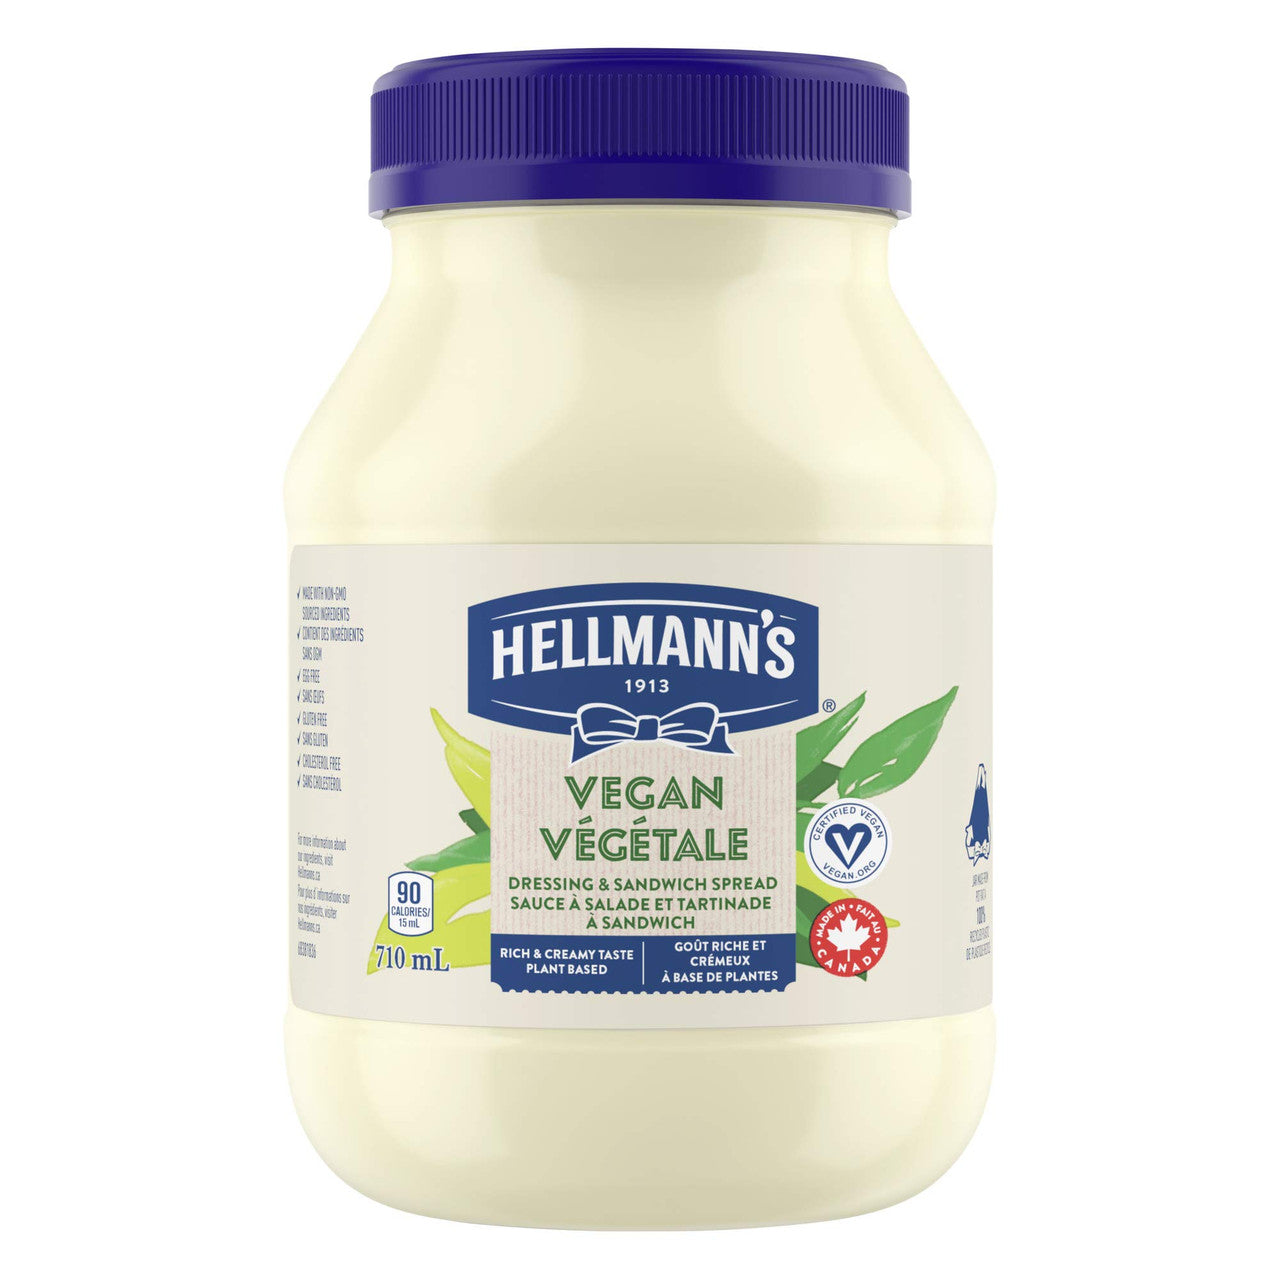 Hellmann's Vegan Dressing & Sandwich Spread, 710ml/24oz., {Imported from Canada}